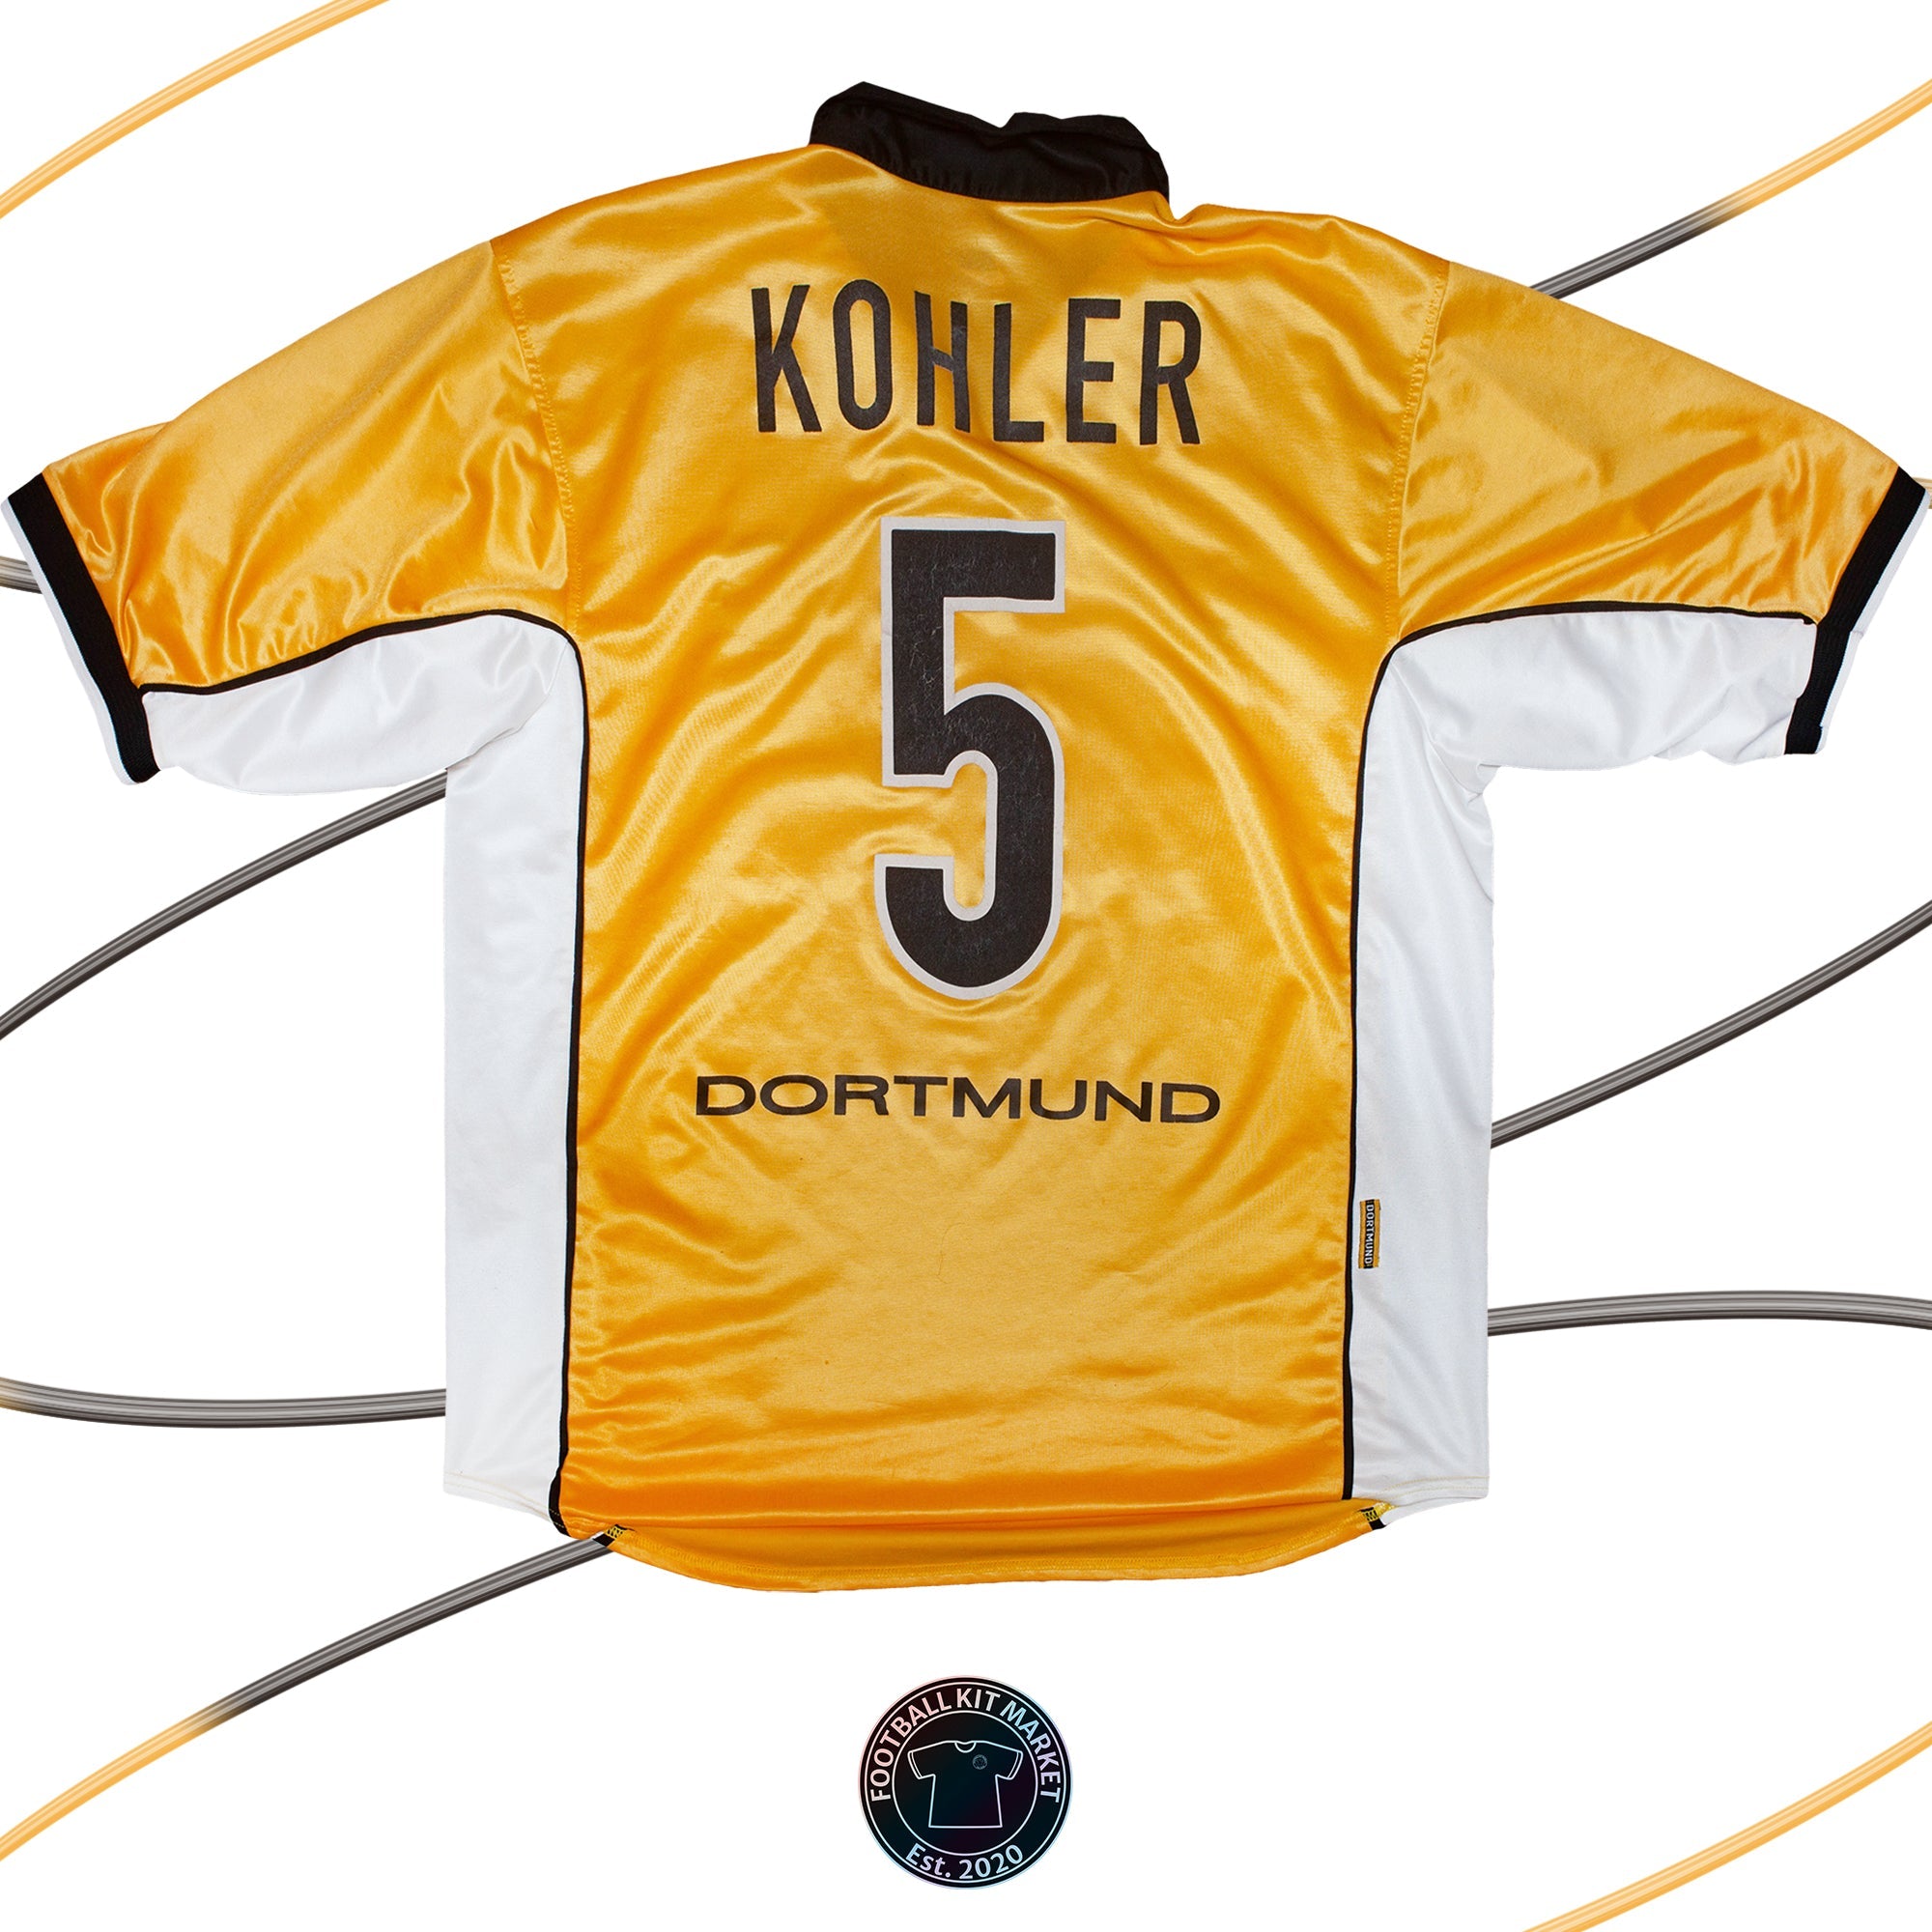 Genuine BORUSSIA DORTMUND Home KOHLER (1998-2000) - NIKE (XL) - Product Image from Football Kit Market